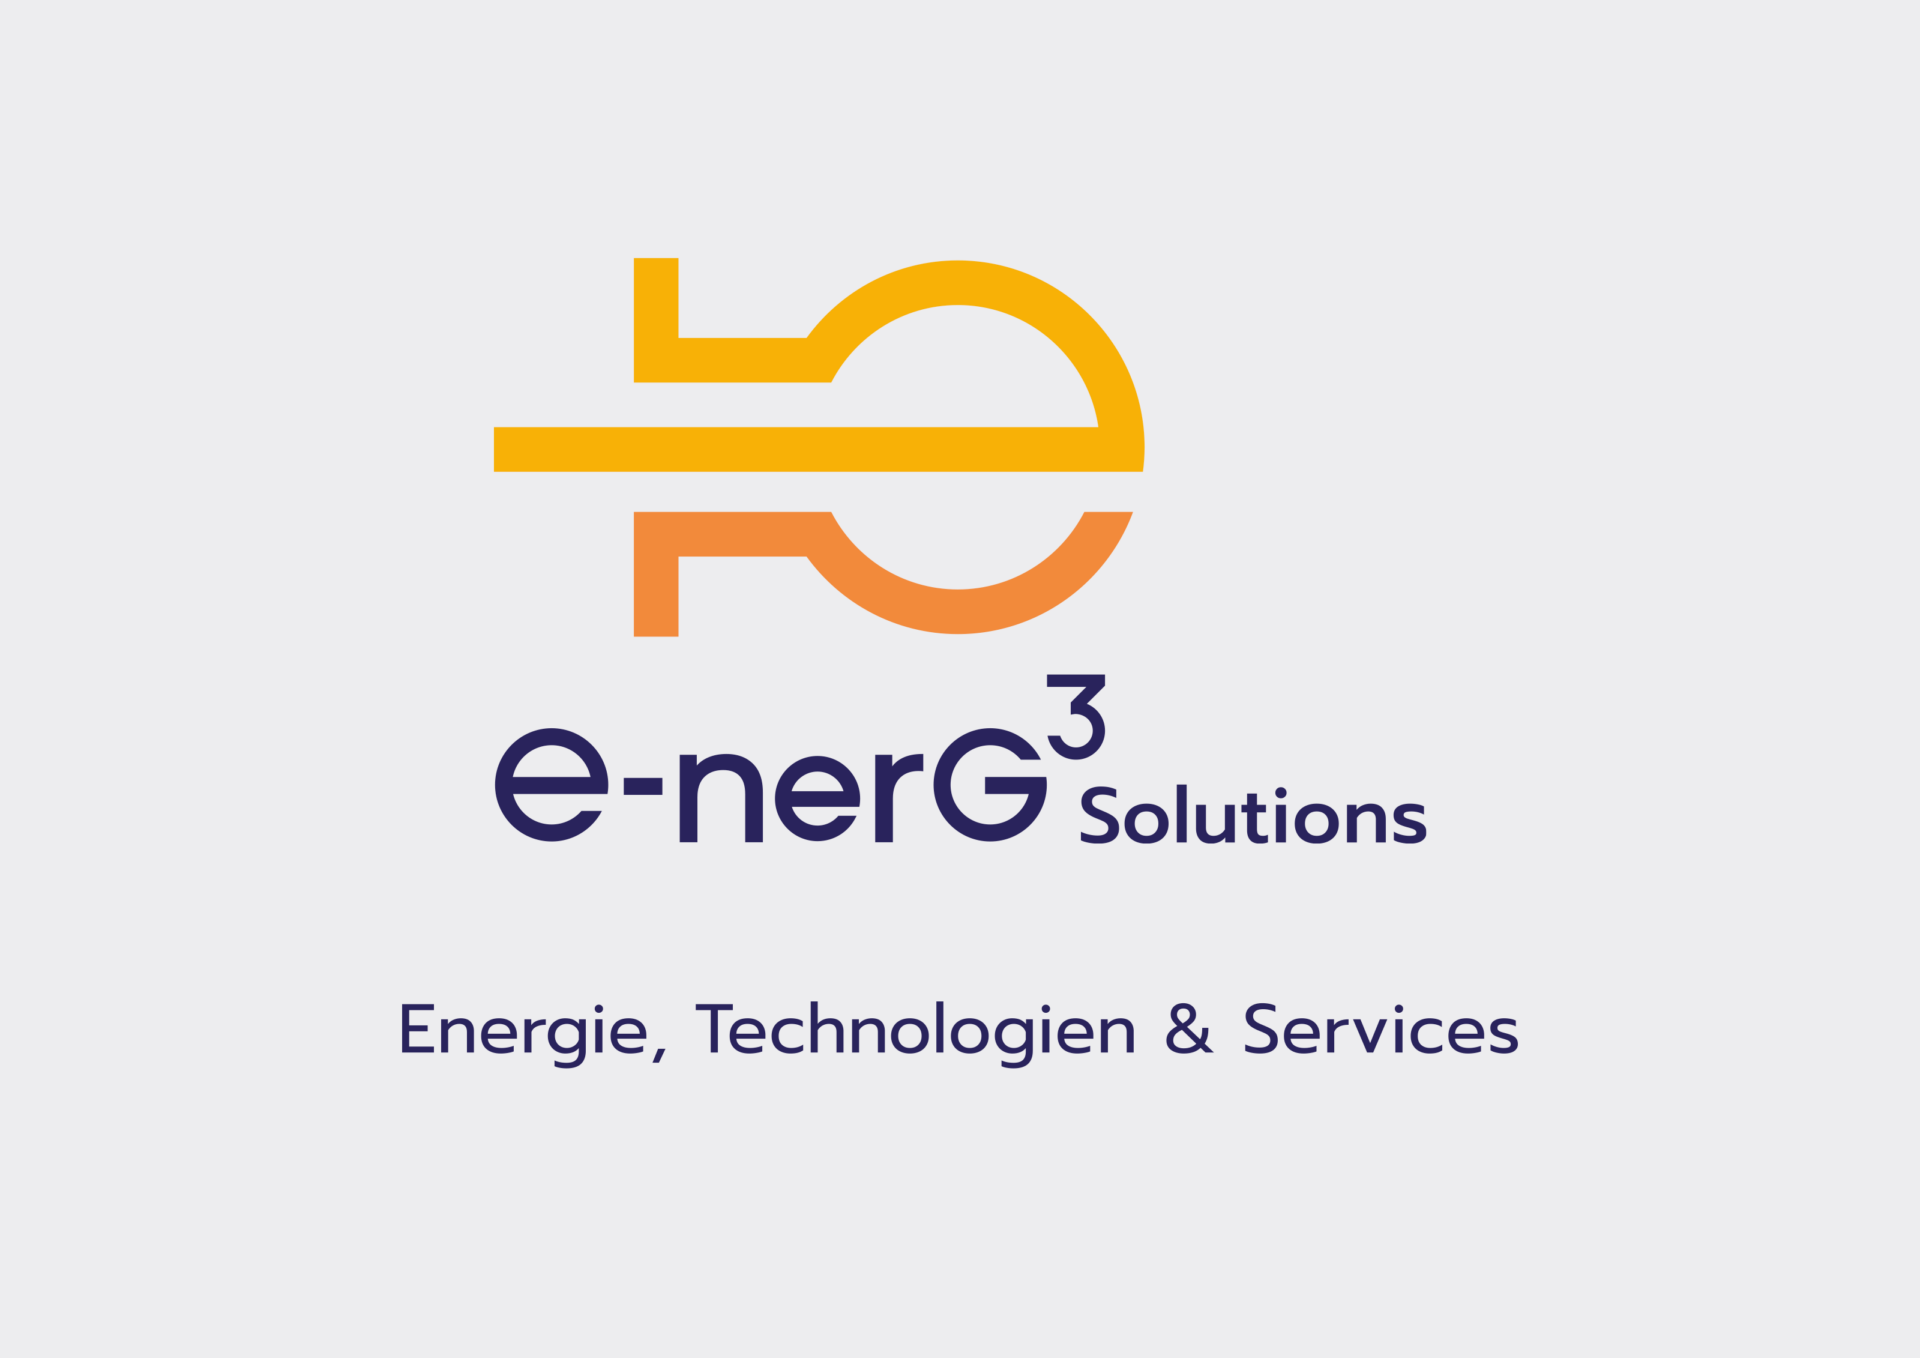 e-nerG3 Solucion